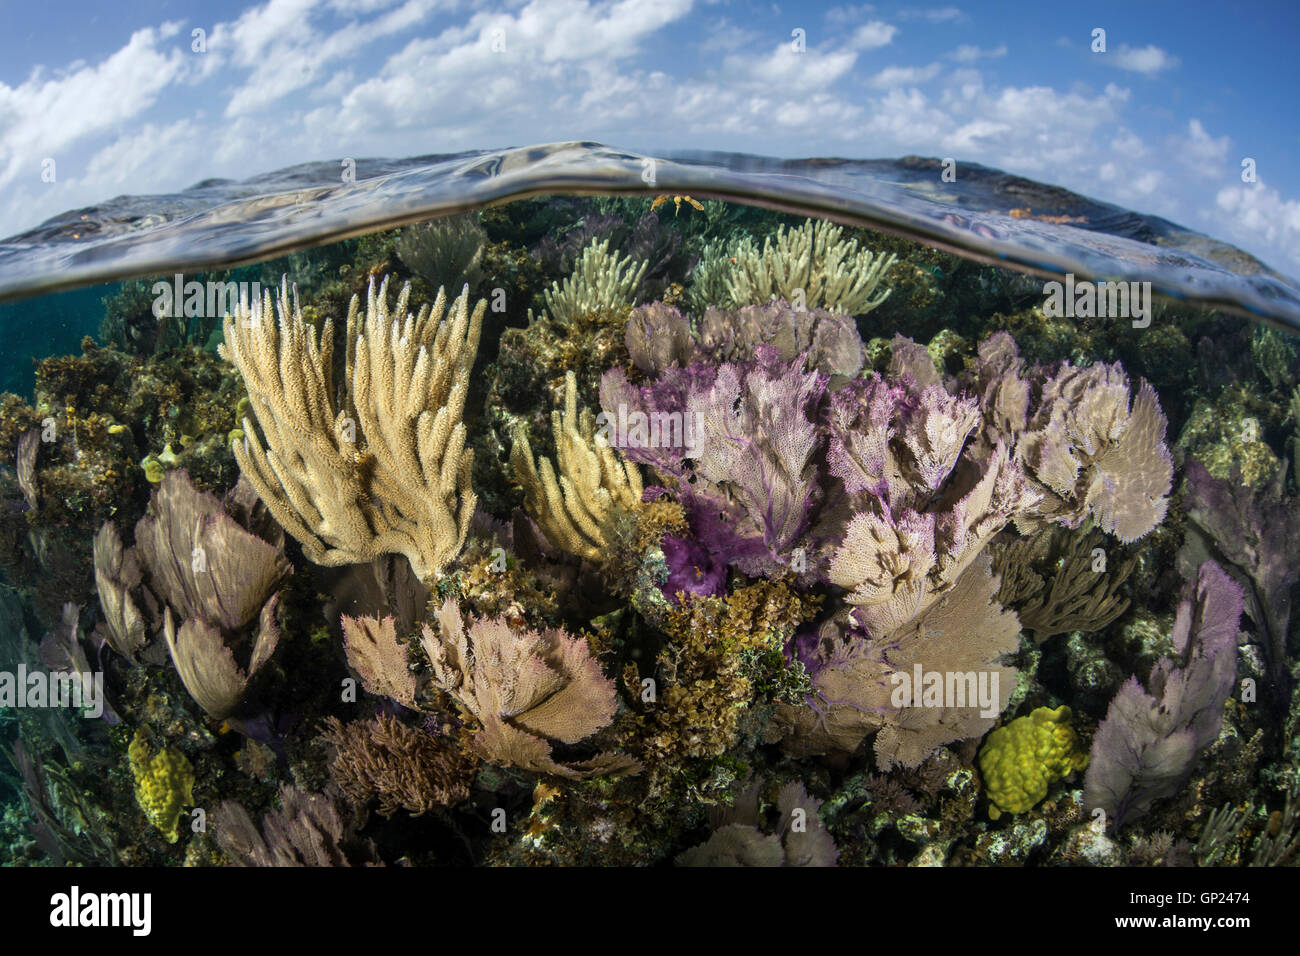 Les récifs coralliens des Caraïbes, Turneffe Atoll, des Caraïbes, le Belize Banque D'Images